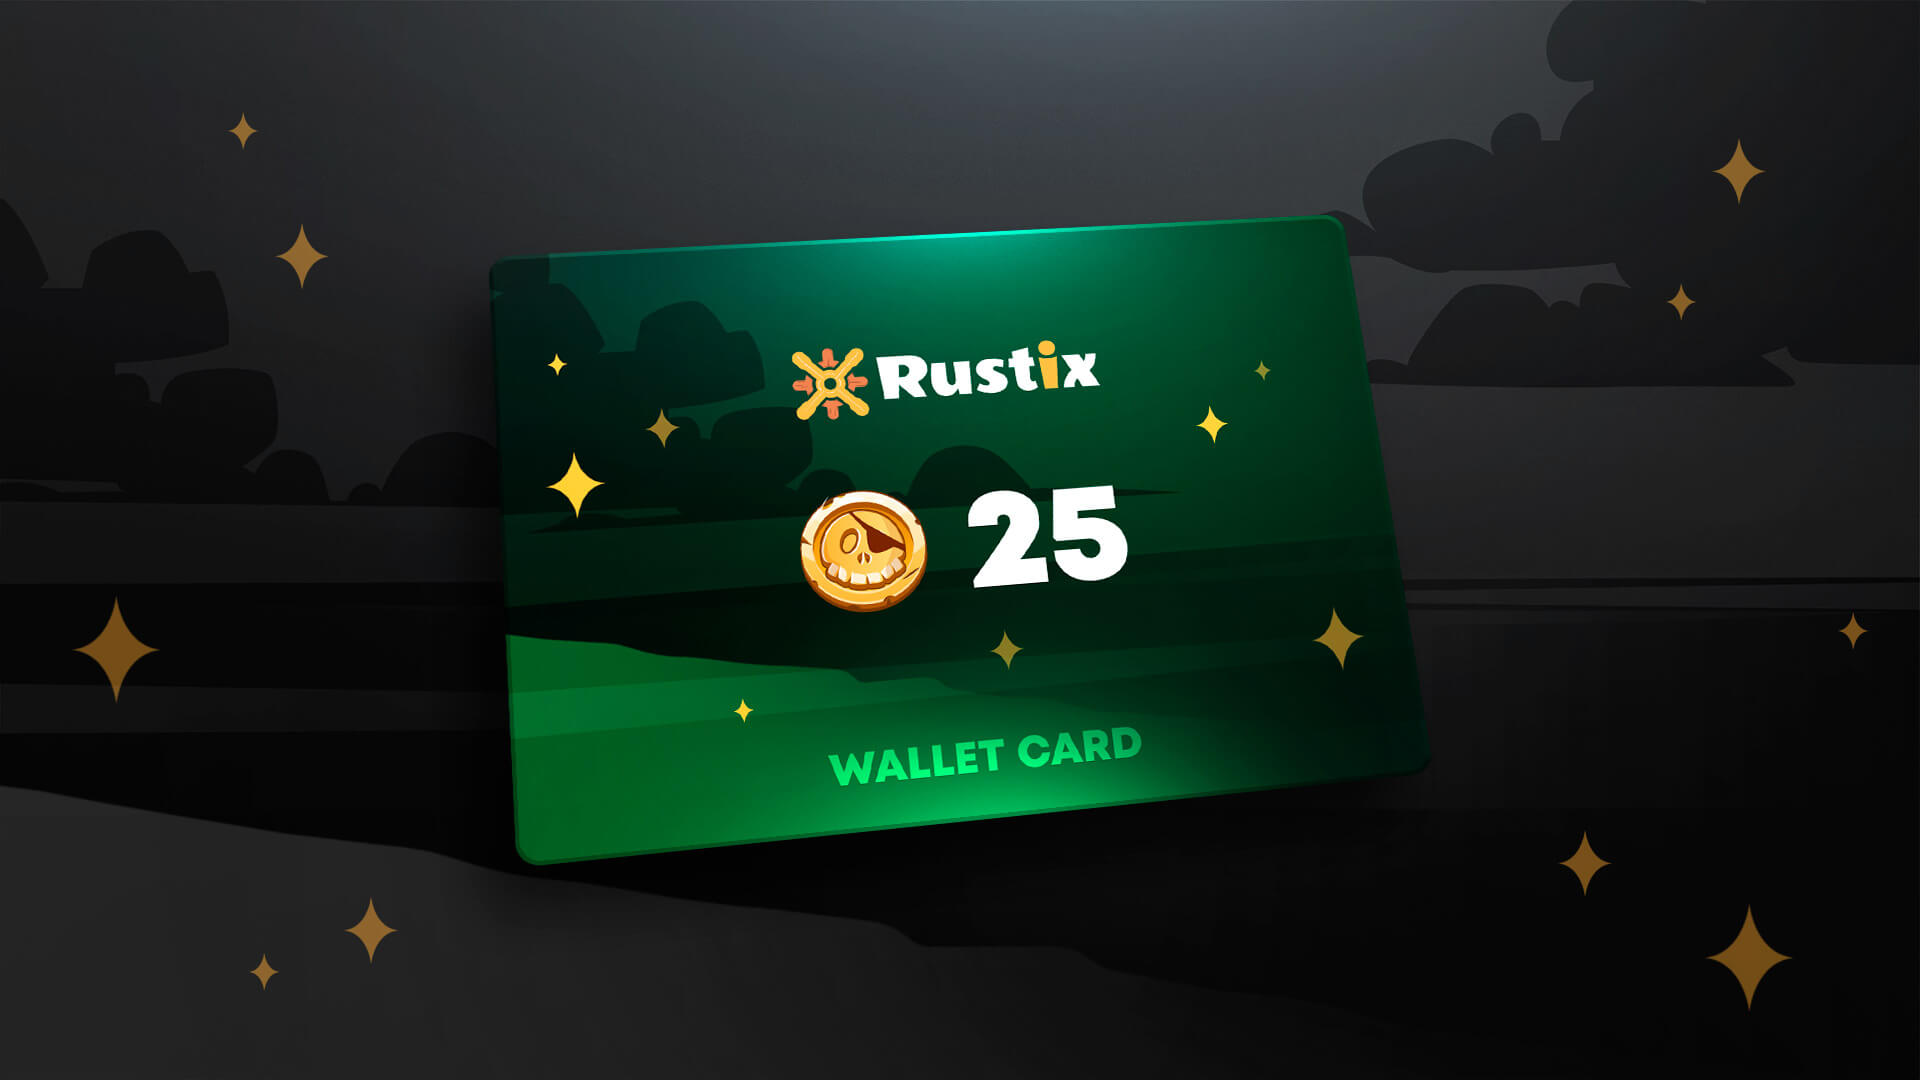 Rustix.io 25 USD Wallet Card Code, 28.25$